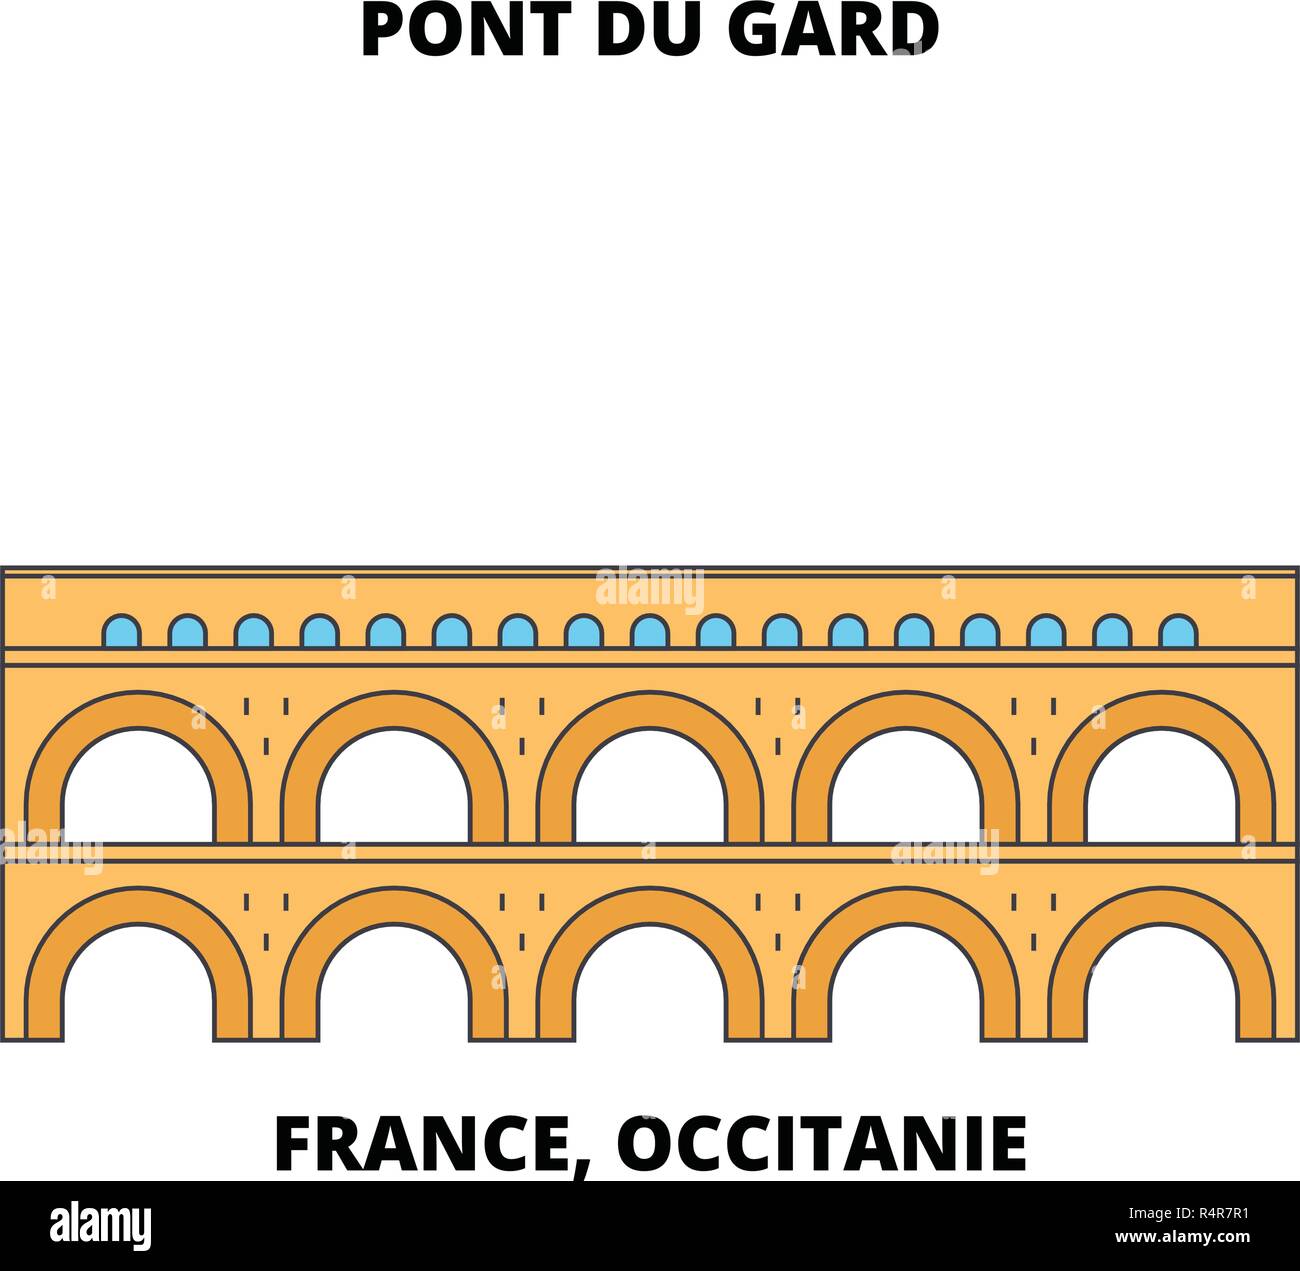 Frankreich, Royal-Pont du Gard (römische Aquädukt) Linie reisen Sehenswürdigkeit, Skyline, vektor design. Frankreich, Royal-Pont du Gard (römische Aquädukt) lineare Abbildung. Stock Vektor